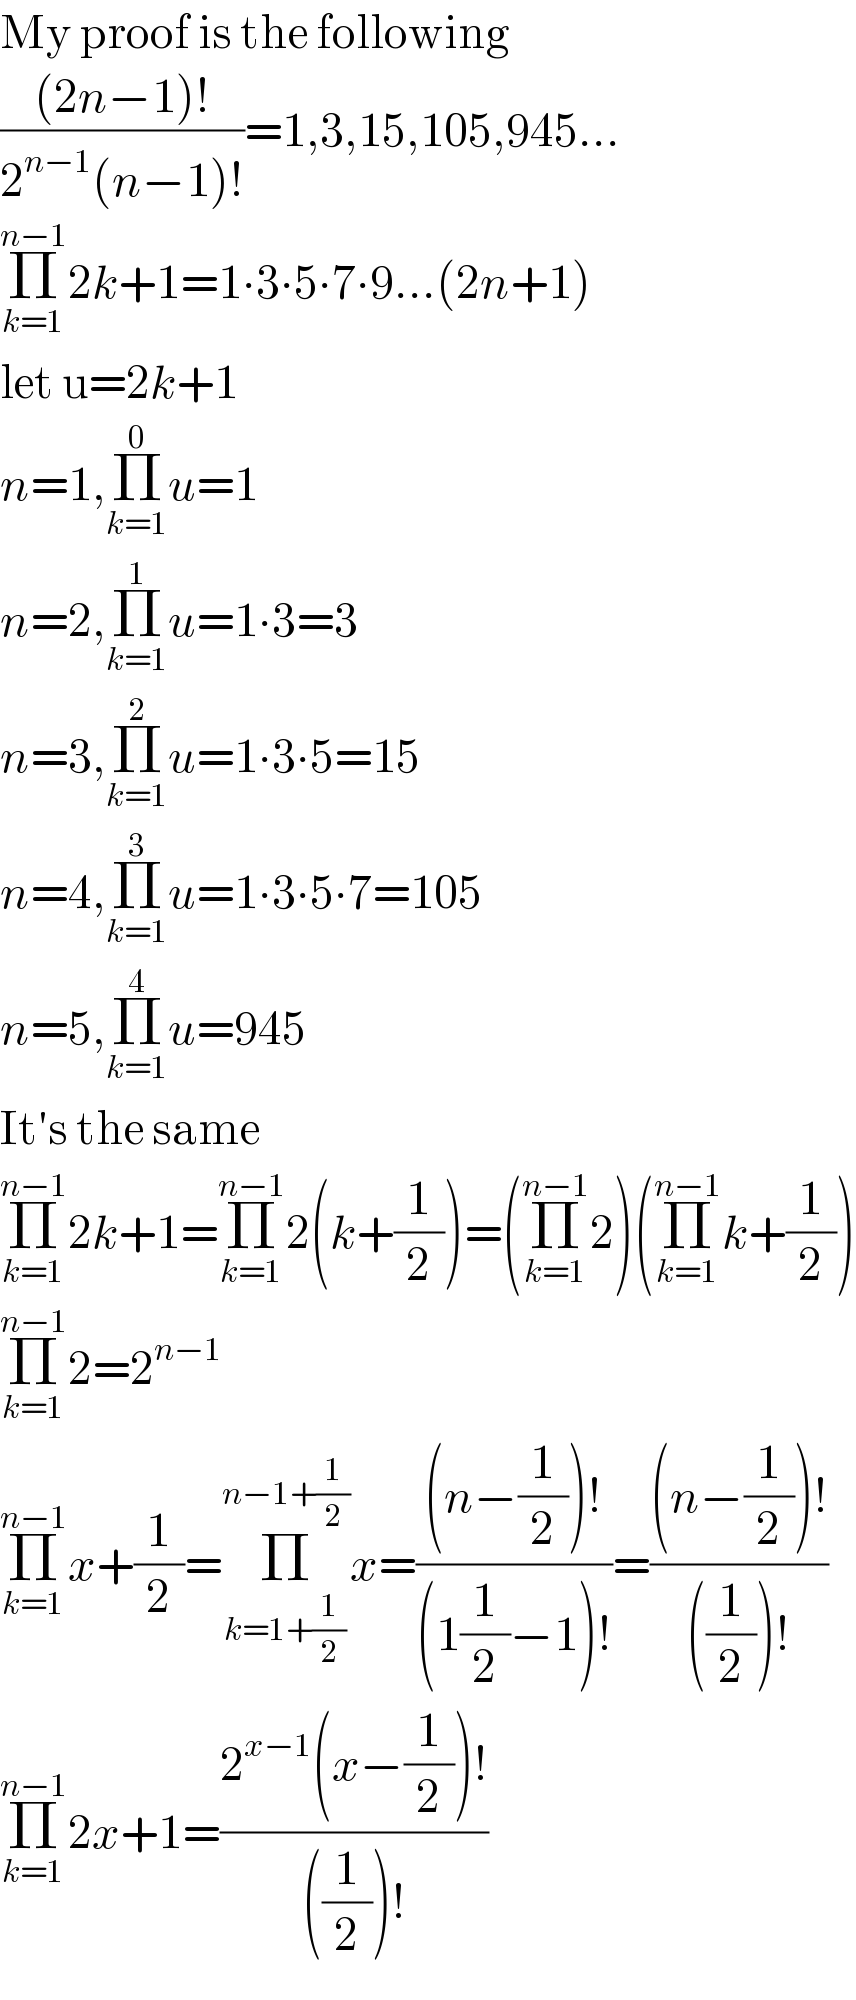 My proof is the following  (((2n−1)!)/(2^(n−1) (n−1)!))=1,3,15,105,945...  Π_(k=1) ^(n−1) 2k+1=1∙3∙5∙7∙9...(2n+1)  let u=2k+1  n=1,Π_(k=1) ^0 u=1  n=2,Π_(k=1) ^1 u=1∙3=3  n=3,Π_(k=1) ^2 u=1∙3∙5=15  n=4,Π_(k=1) ^3 u=1∙3∙5∙7=105  n=5,Π_(k=1) ^4 u=945  It′s the same  Π_(k=1) ^(n−1) 2k+1=Π_(k=1) ^(n−1) 2(k+(1/2))=(Π_(k=1) ^(n−1) 2)(Π_(k=1) ^(n−1) k+(1/2))  Π_(k=1) ^(n−1) 2=2^(n−1)   Π_(k=1) ^(n−1) x+(1/2)=Π_(k=1+(1/2)) ^(n−1+(1/2)) x=(((n−(1/2))!)/((1(1/2)−1)!))=(((n−(1/2))!)/(((1/2))!))  Π_(k=1) ^(n−1) 2x+1=((2^(x−1) (x−(1/2))!)/(((1/2))!))  